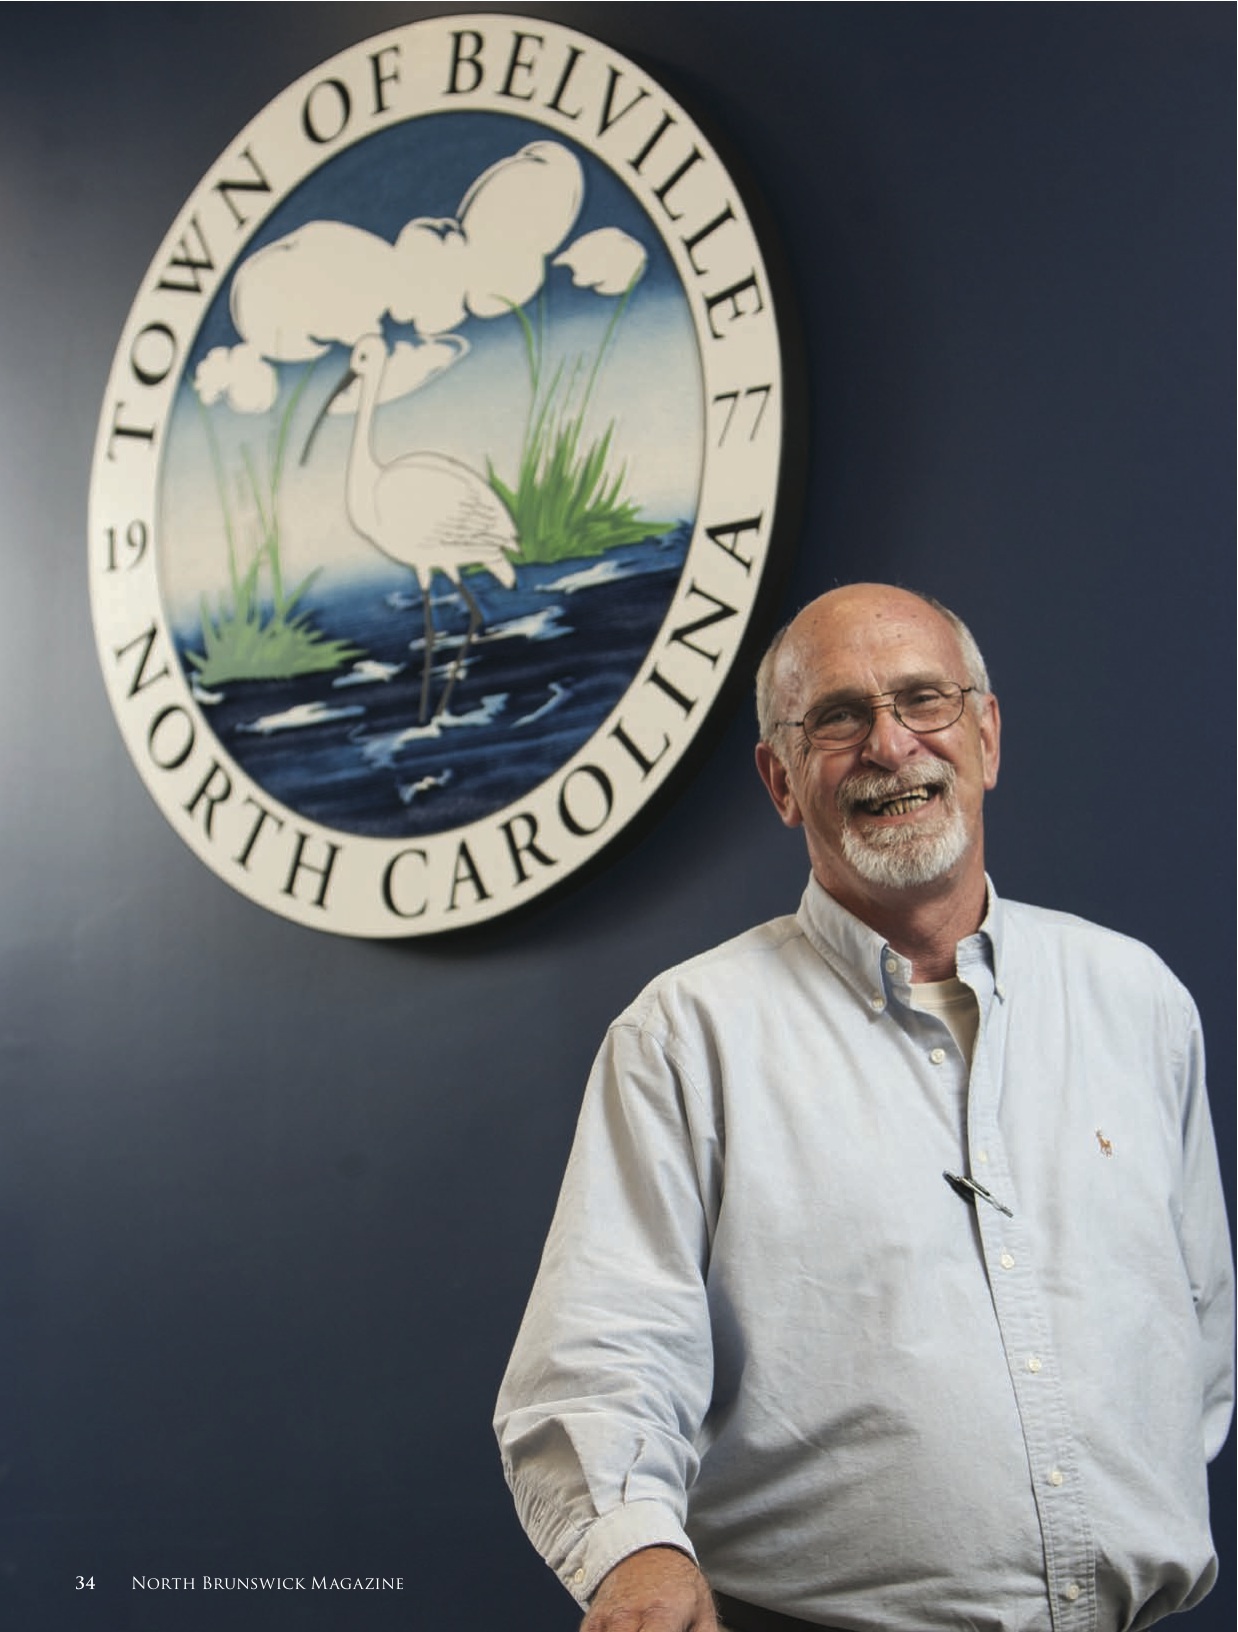 Profile of North Carolina Mayor by Freelance Writer Jason Frye